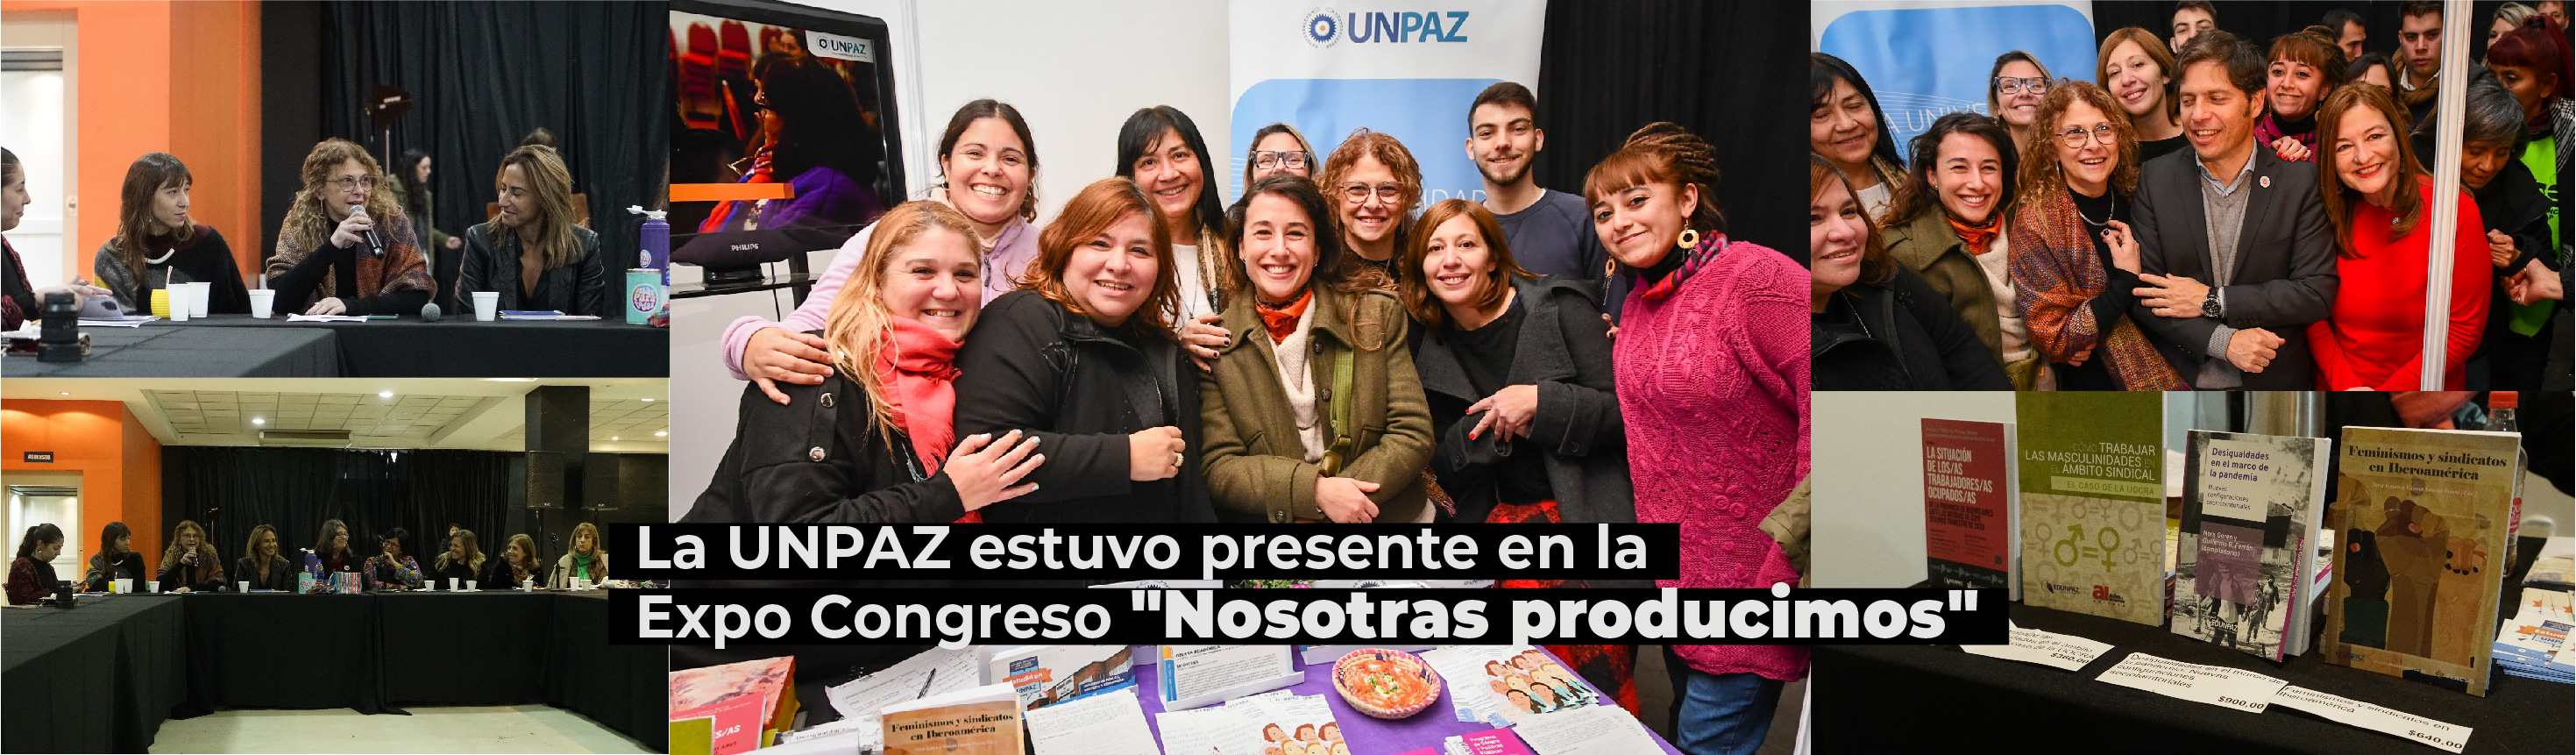 La UNPAZ estuvo presente en la Expo Congreso "Nosotras producimos"